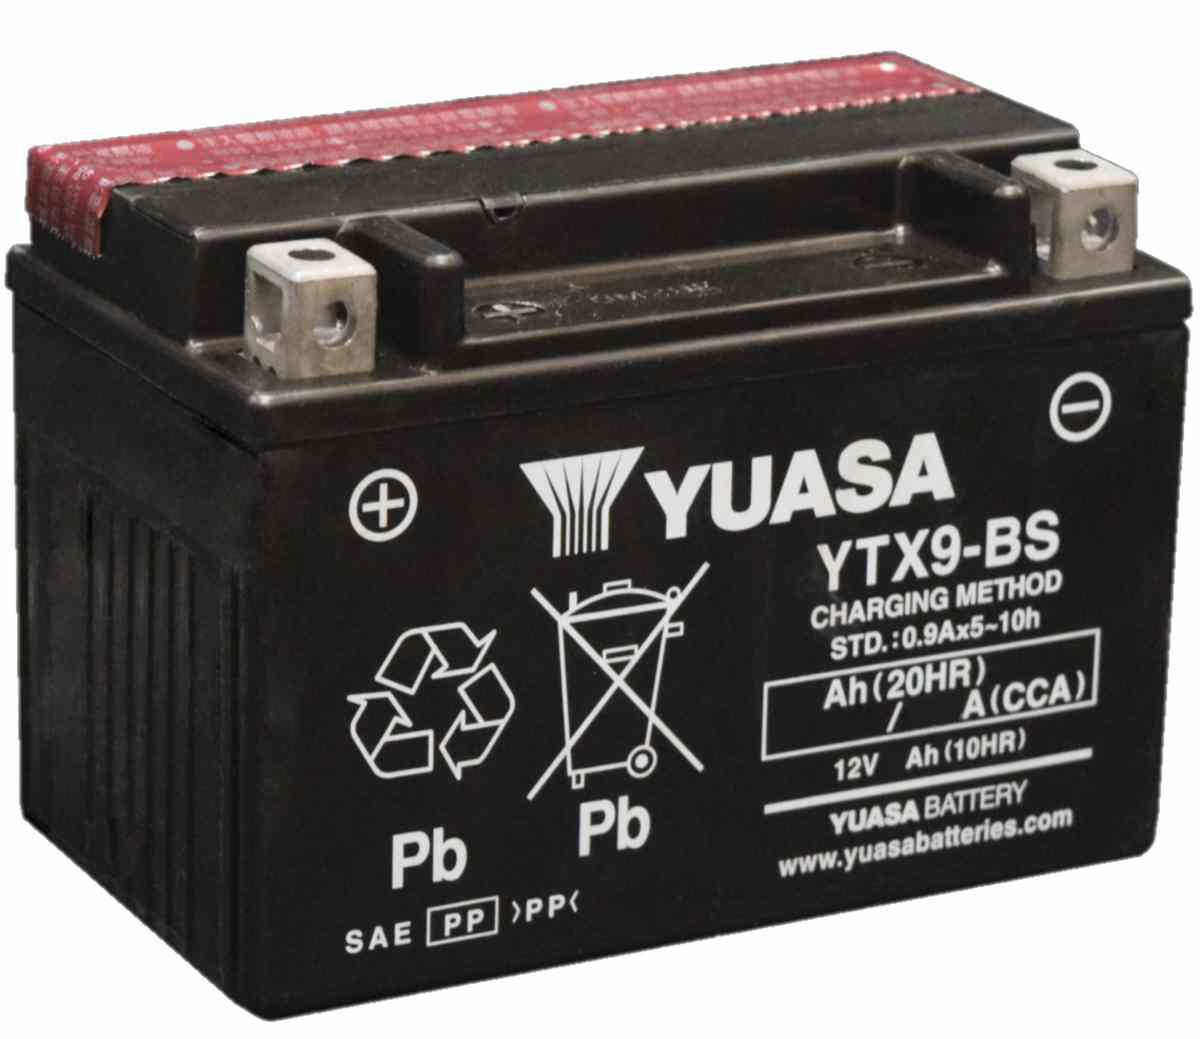 Bateria Yuasa YTX9-BS. Varejo a Preço de Atacado - Bateria Yuasa